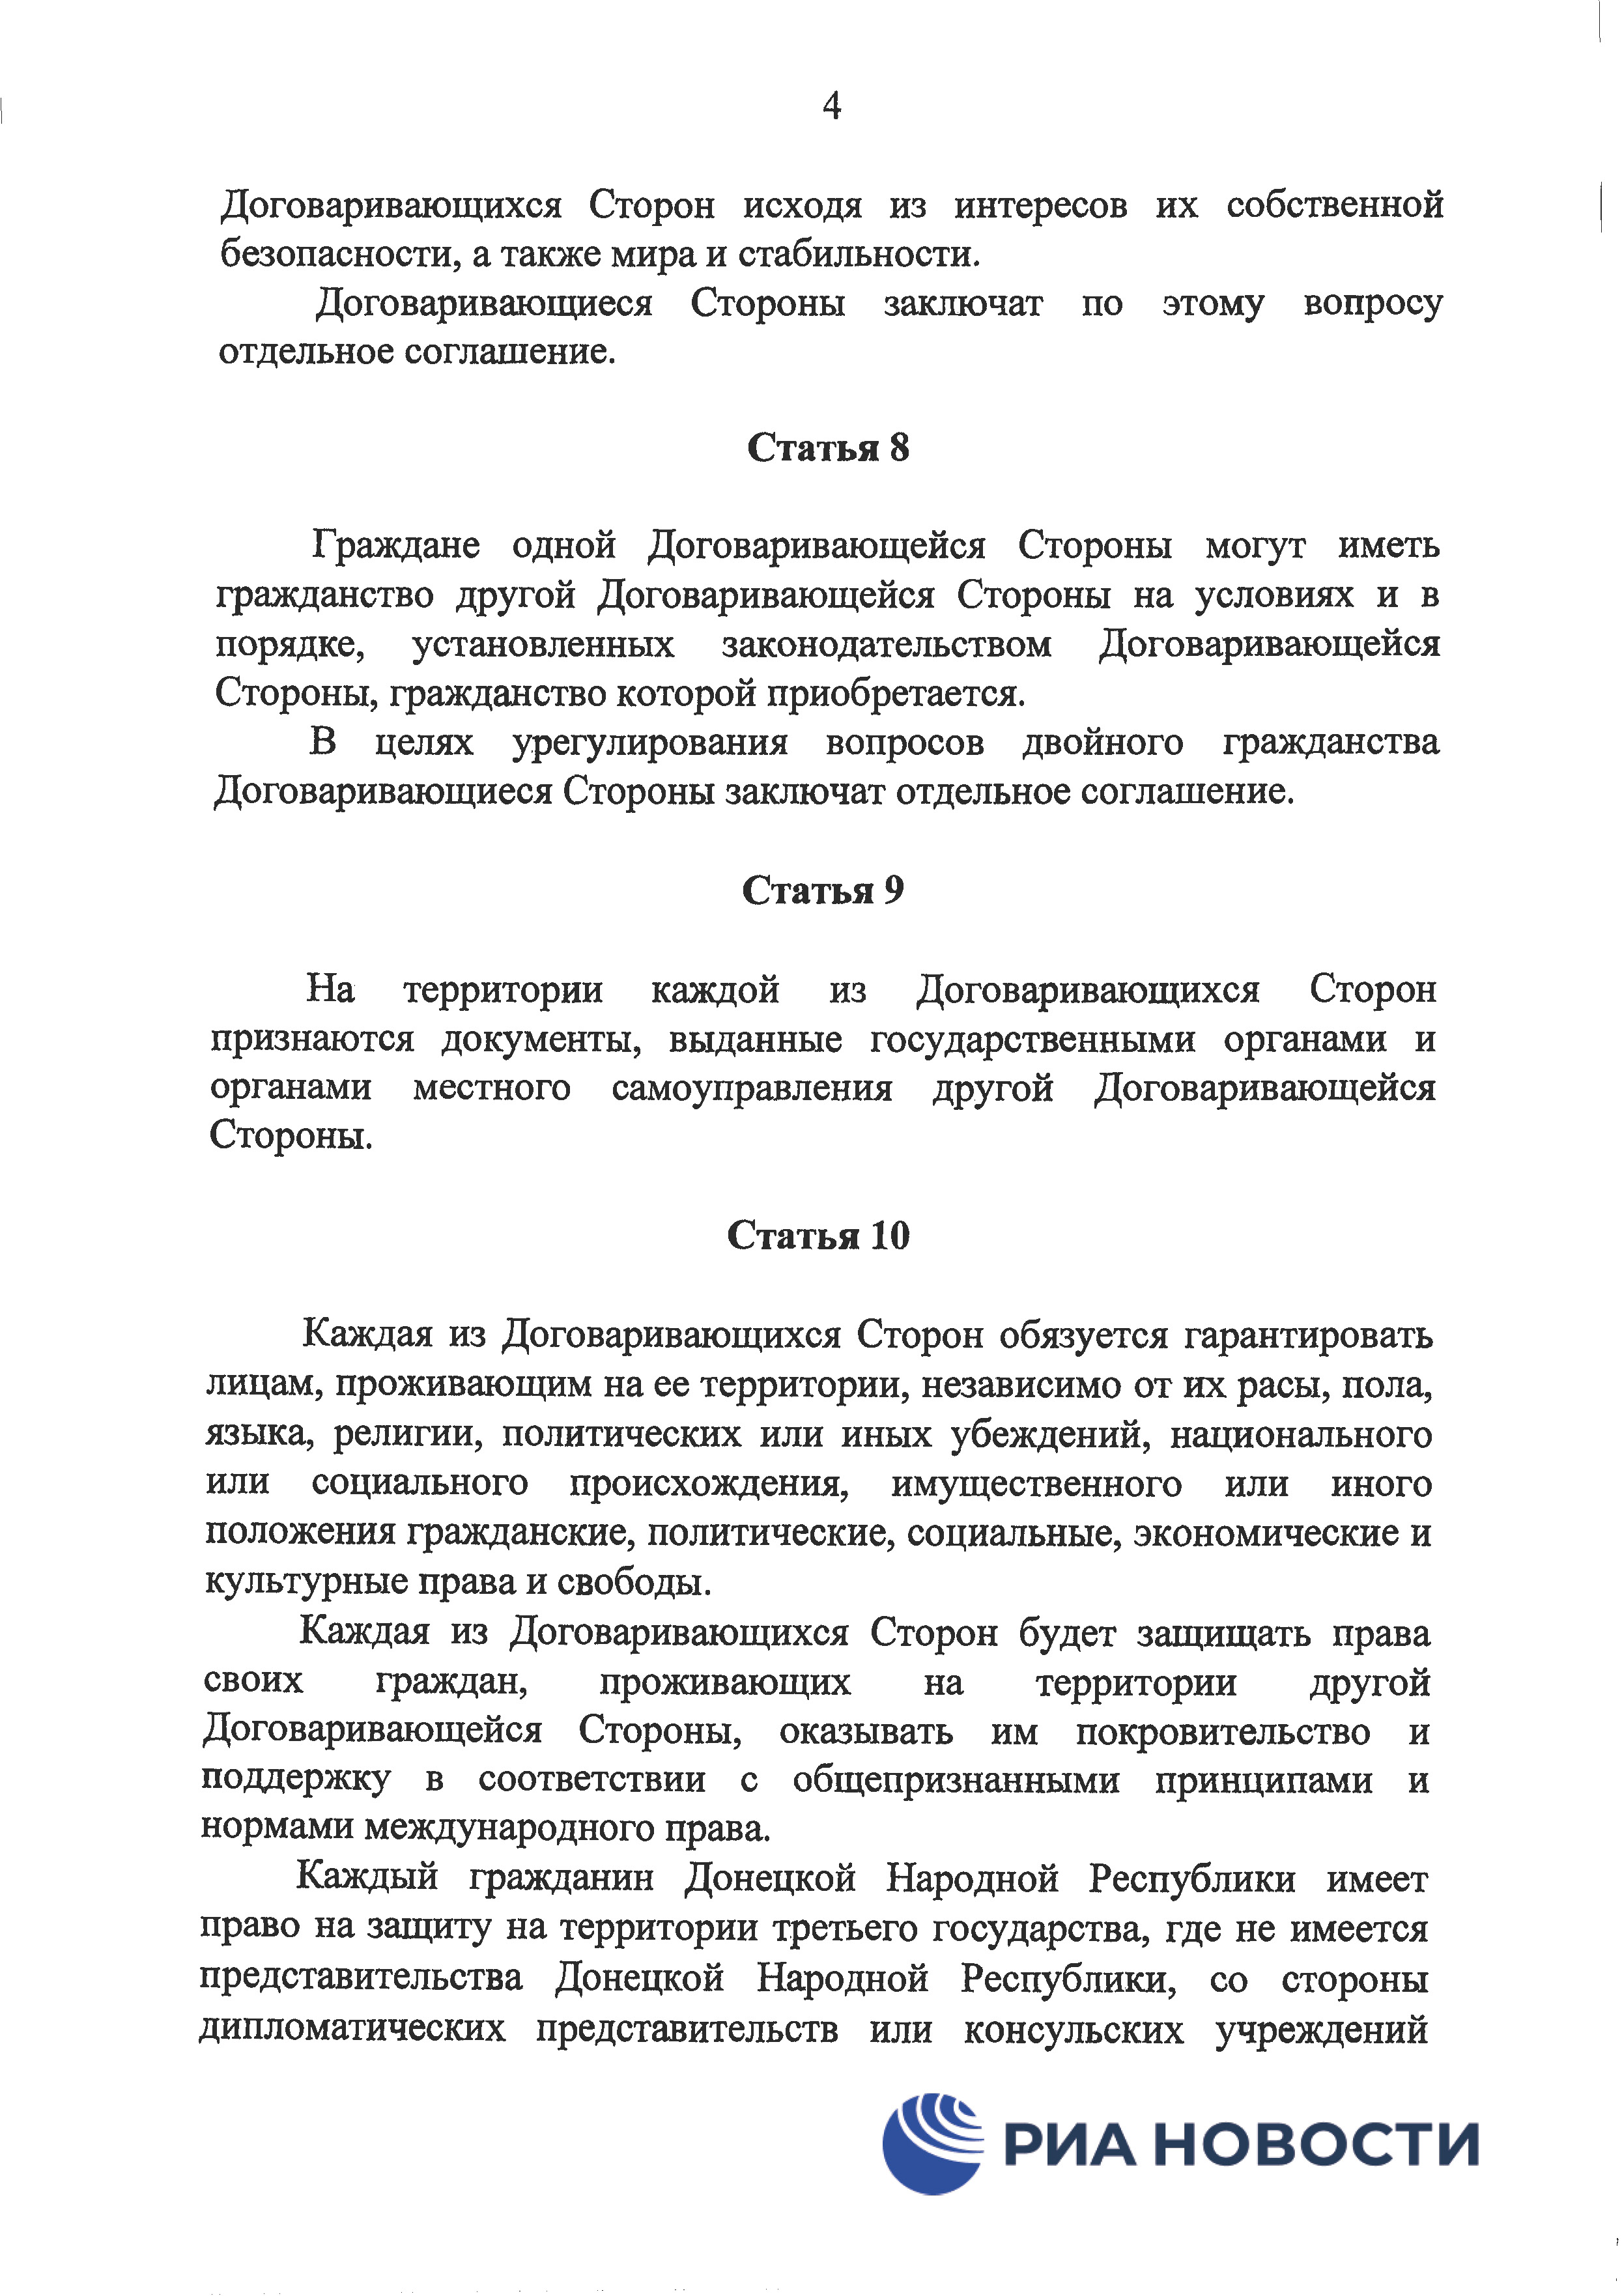 Договор о дружбе России с ДНР и ЛНР - страница 7